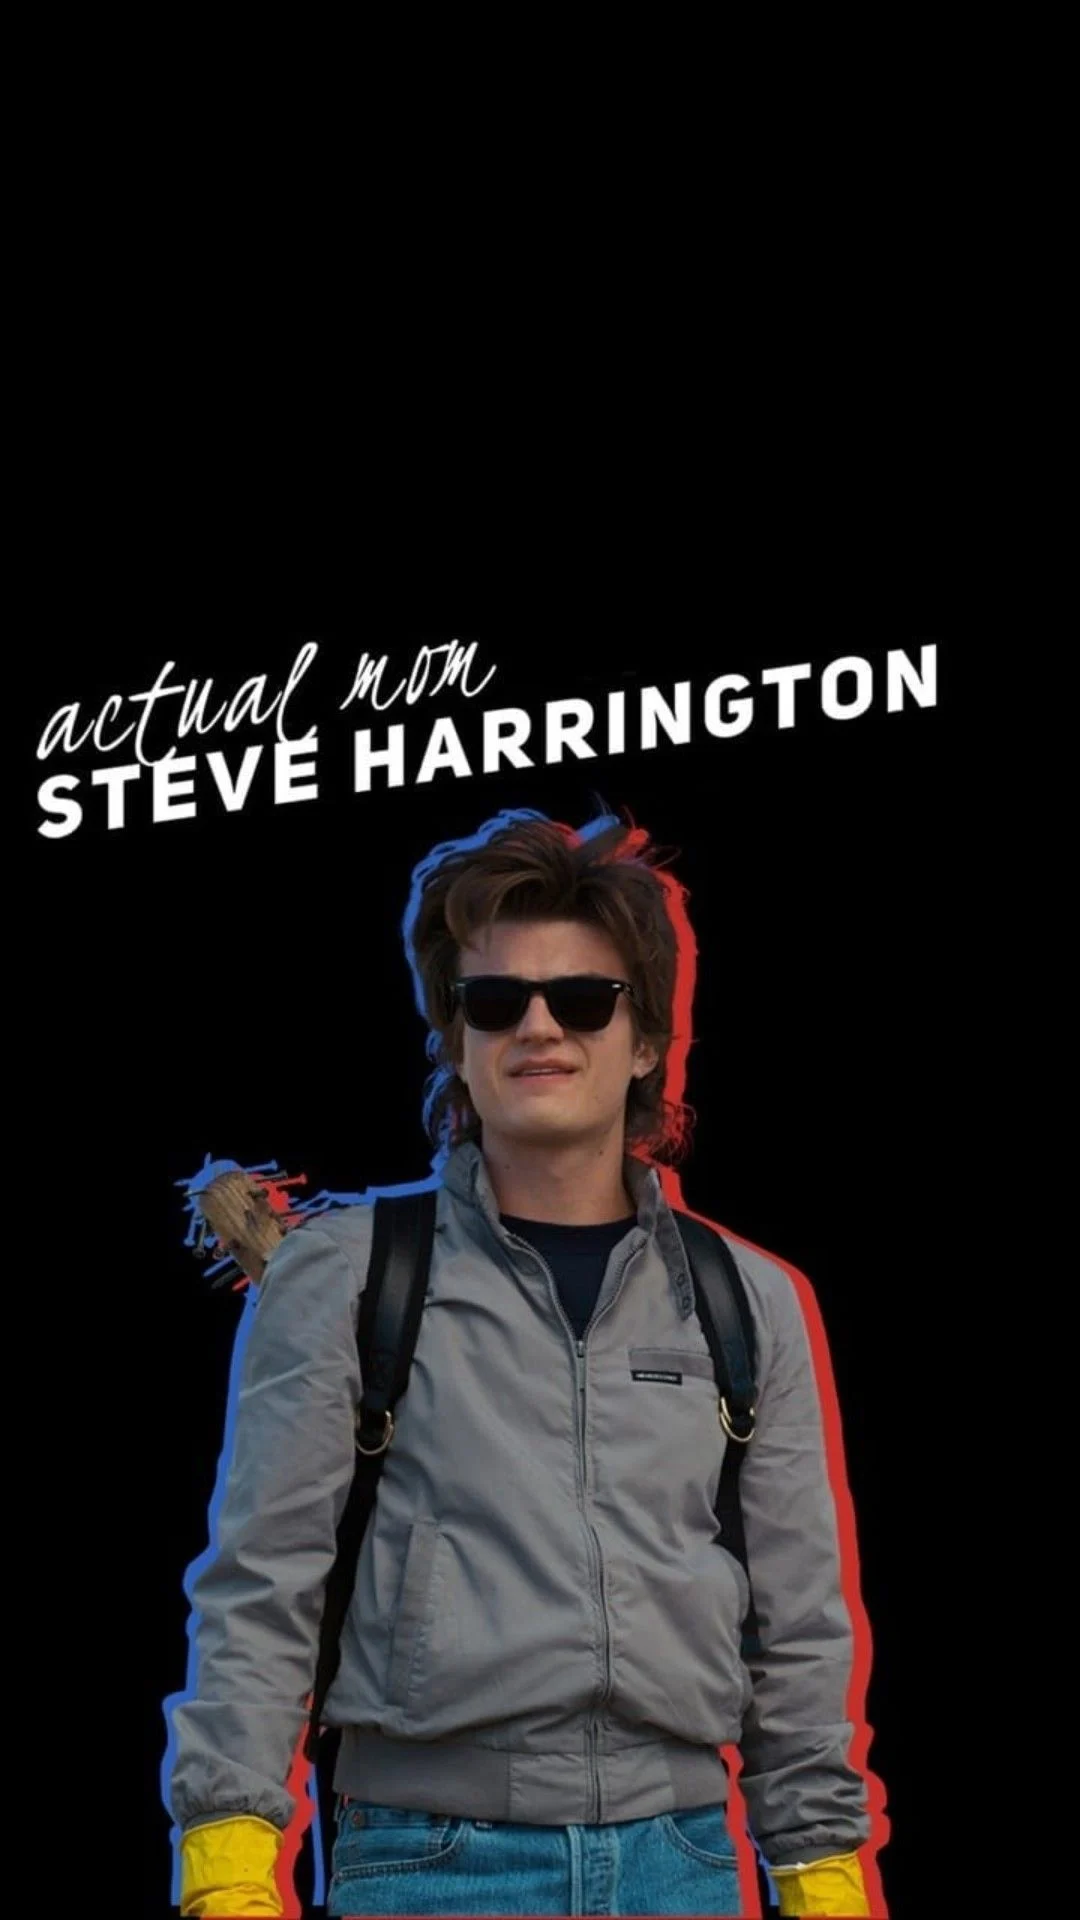 Steve Harrington' Poster by Stranger Things Series | Displate